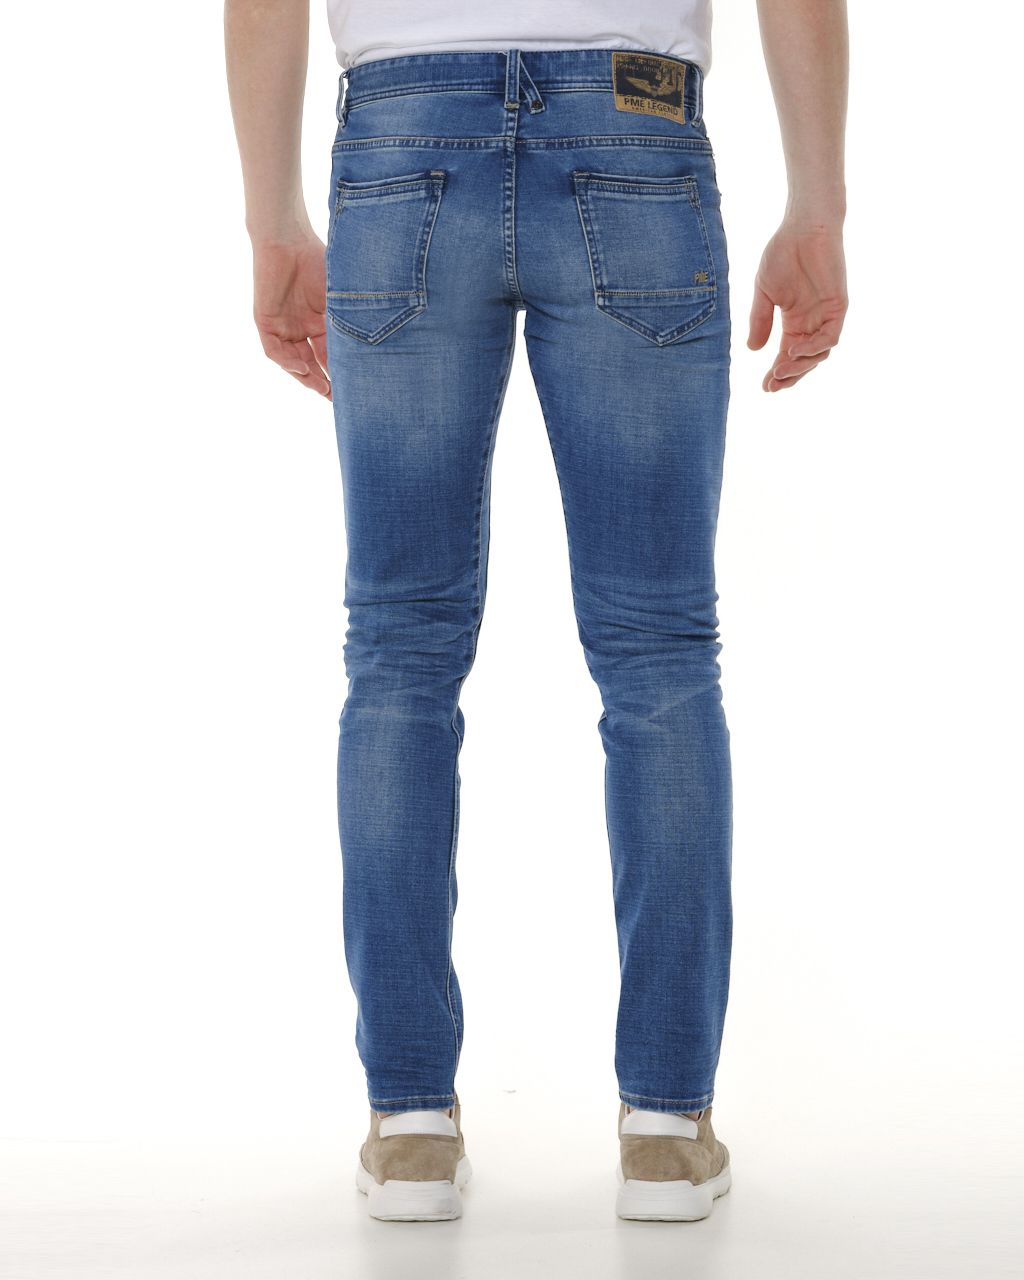 PME Legend Tailwheel Jeans  Blauw 062082-001-28/30